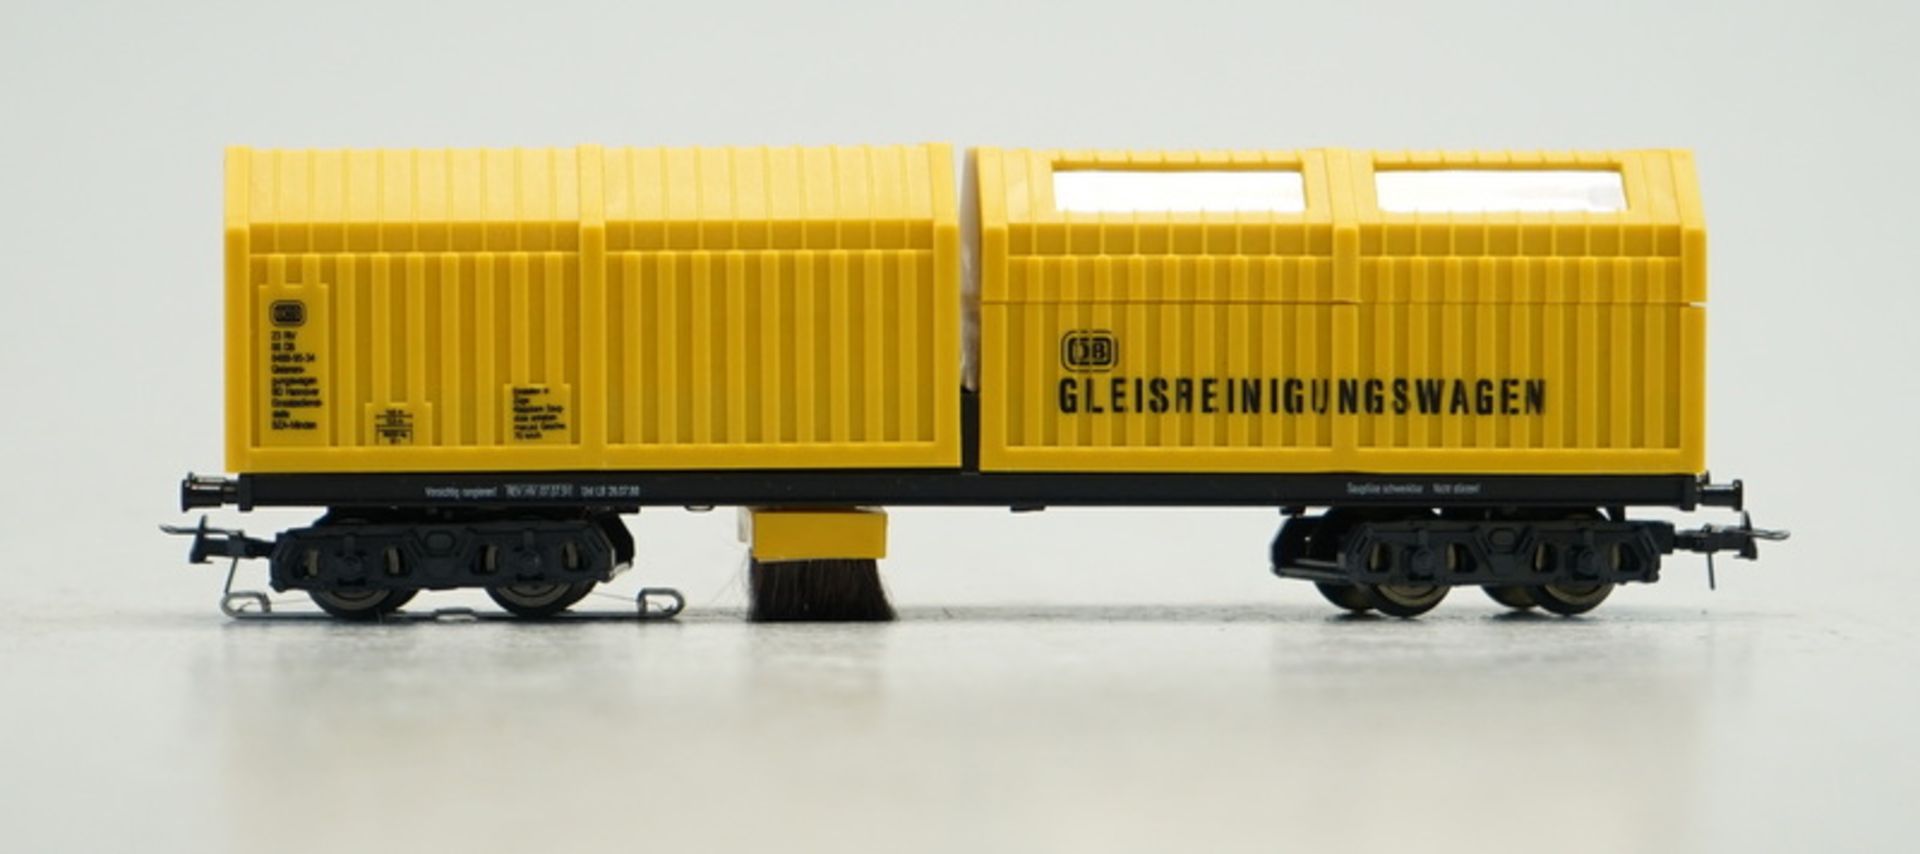 LUX-Modellbau: #8820 Gleisstaubsauger, Spur H0 digital.